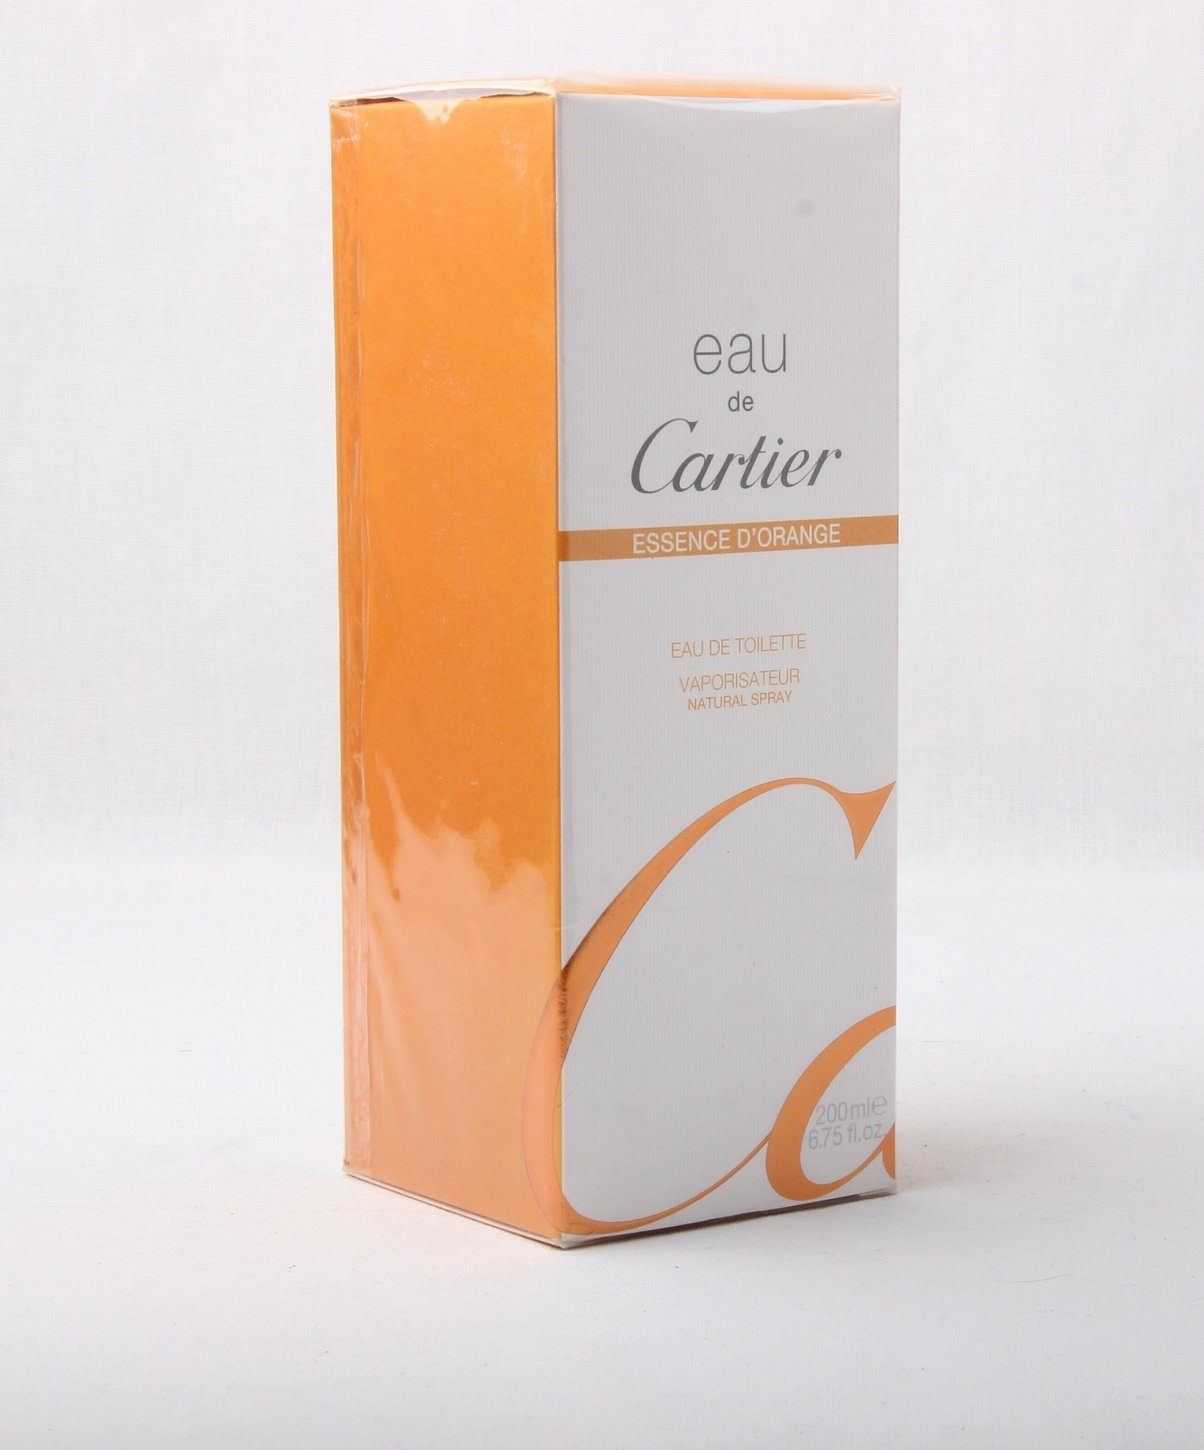 Cartier Eau de Toilette Eau de Cartier Essence d'Orange Eau de Toilette Spray 200ml